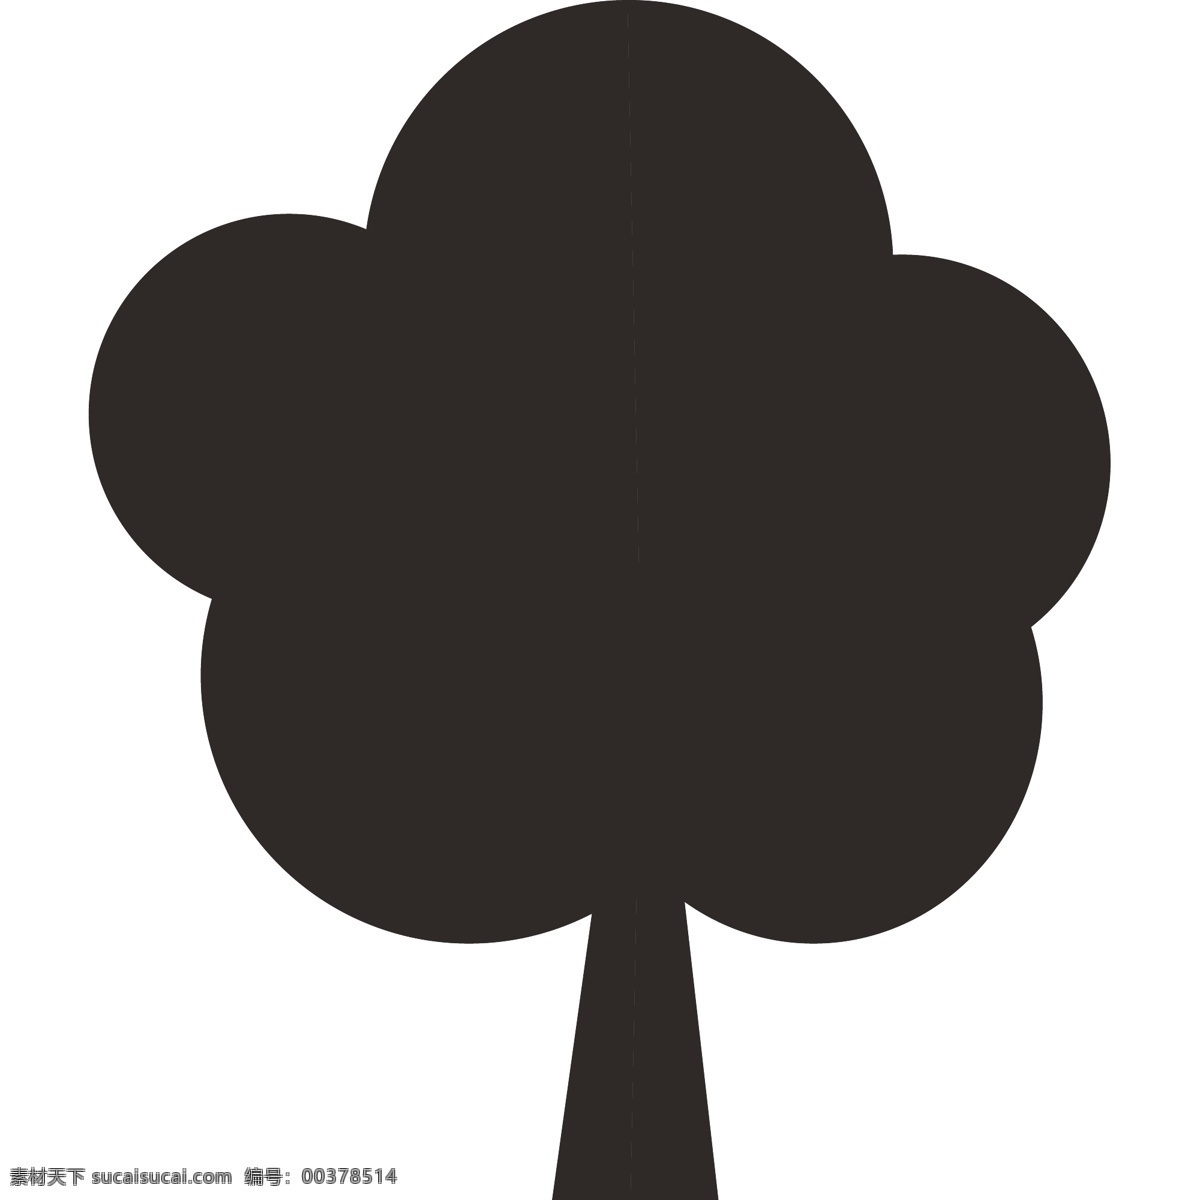 黑色 树木 简约 形状 矢量 矢量图 茂盛 浓密 自然 简单 乡村 茂密的树木 树木的倒影